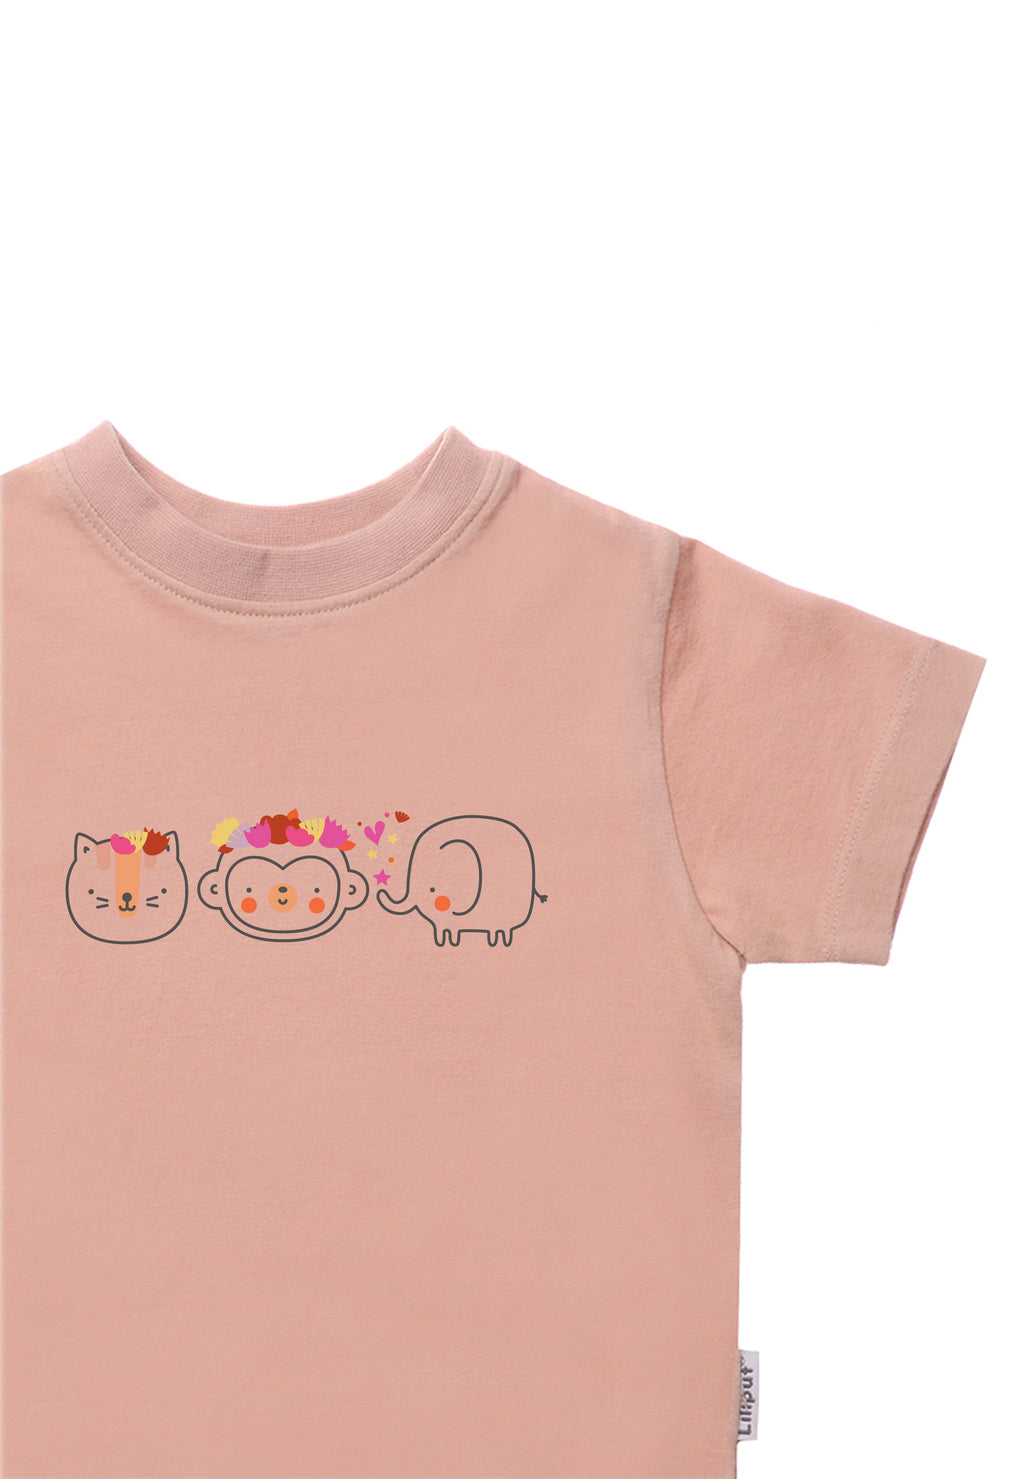 Doppelpack Bio Baumwoll T-shirt in apricot und rose mit Print "lets dream big" und Tierchen